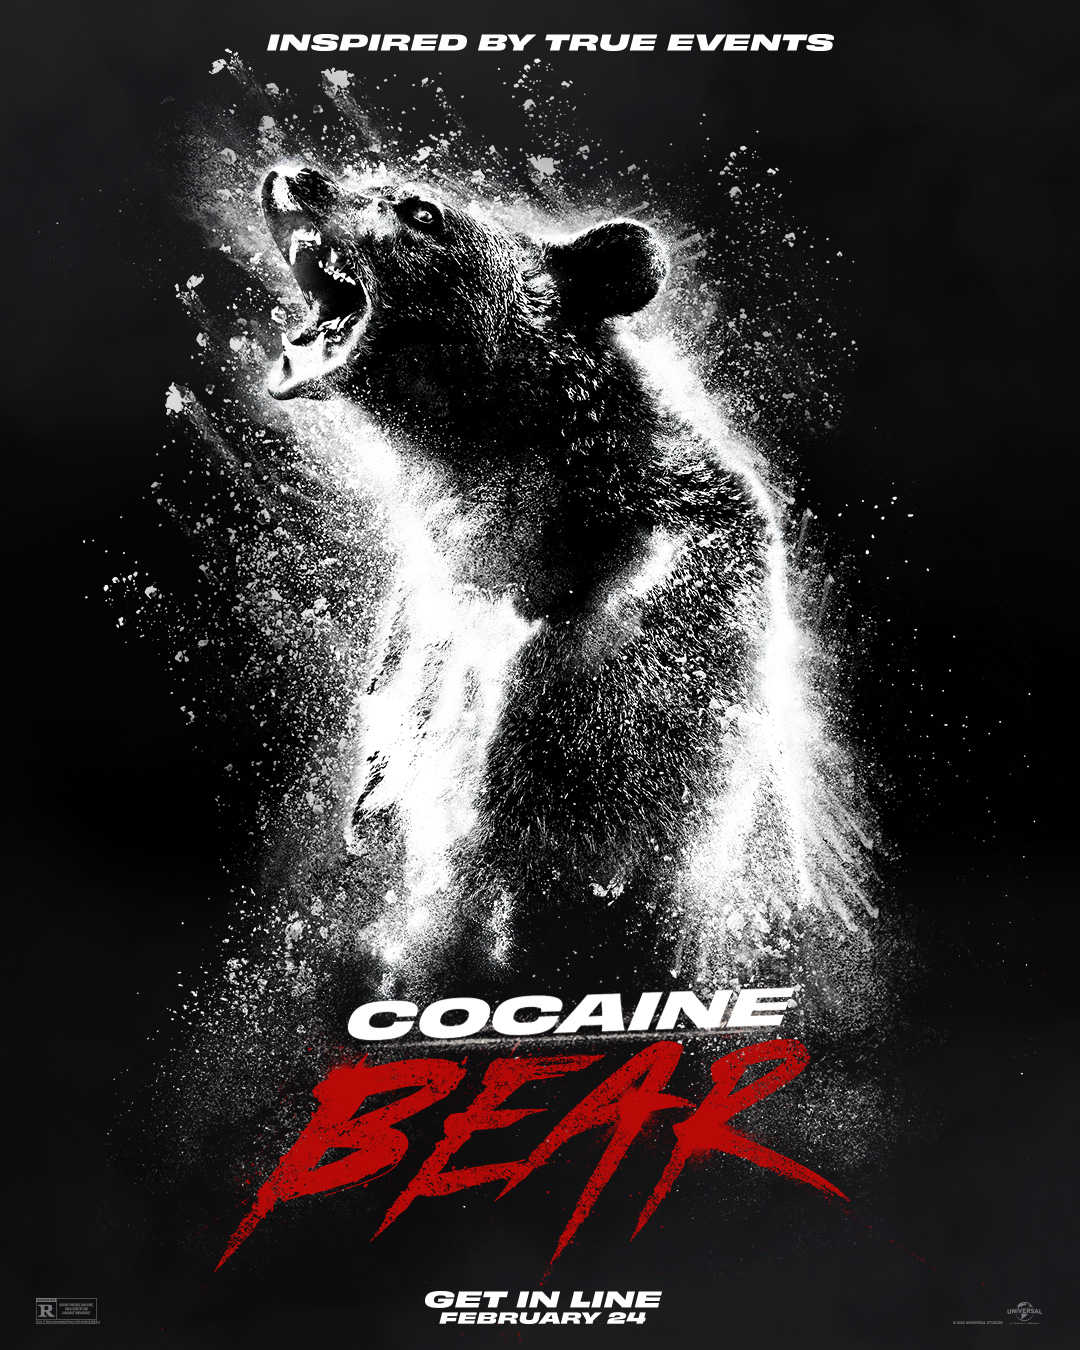 Kokaino lokys (Cocaine bear)